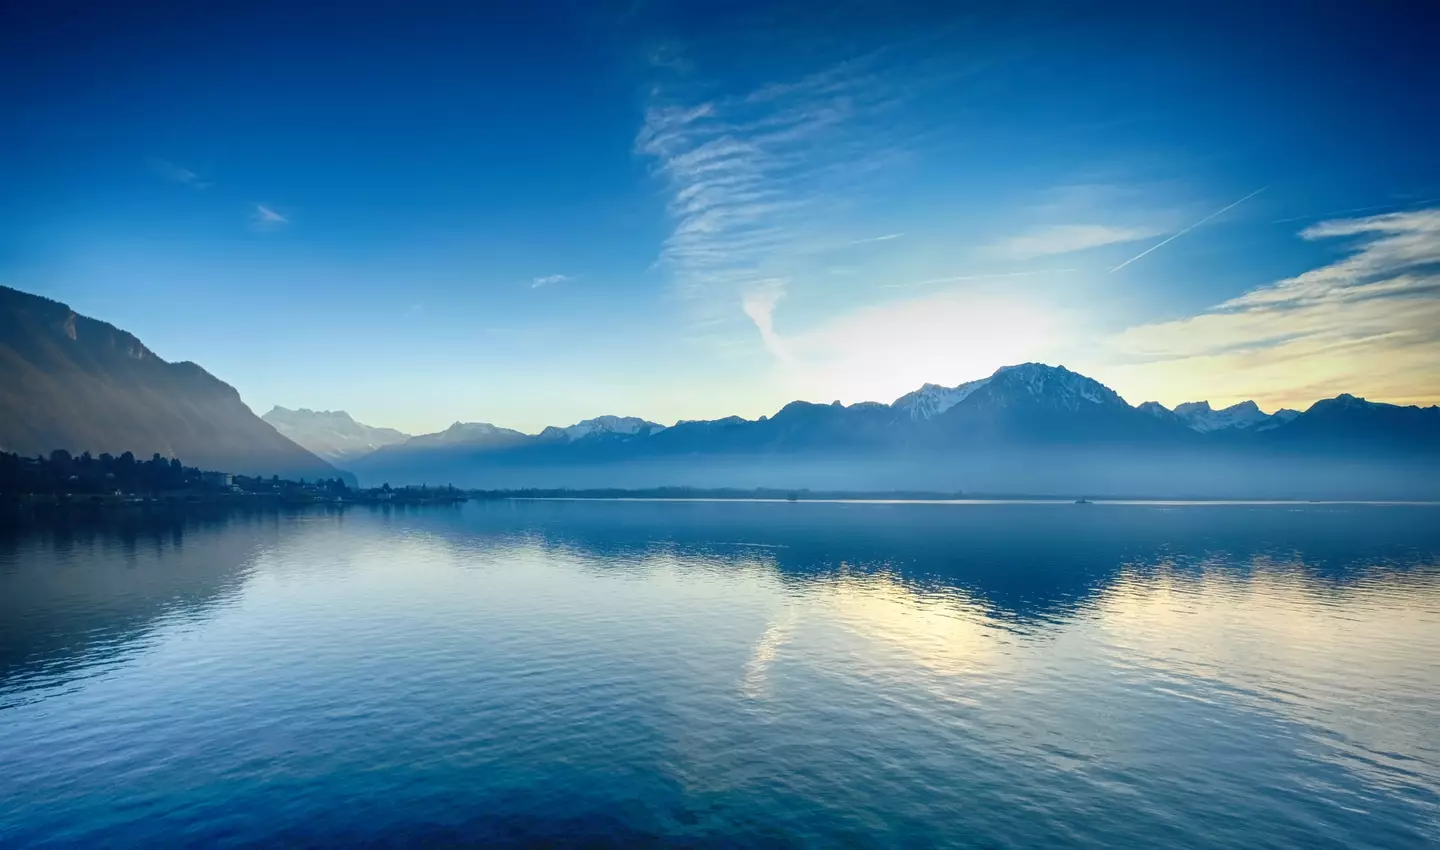 Alps at Lake Geneva.